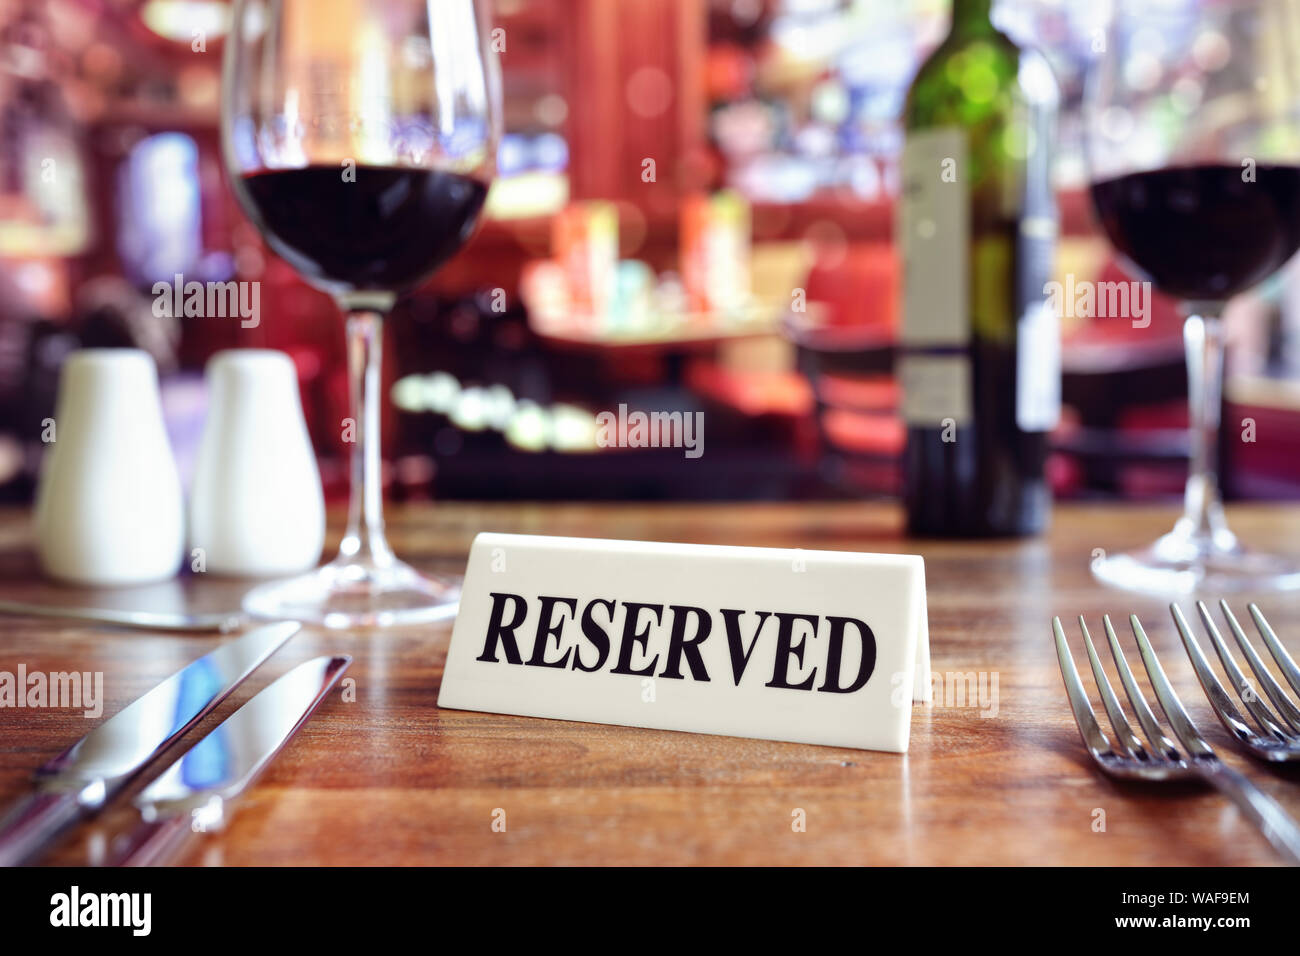 Restaurant Tisch reserviert Schild mit Orte Einstellung und Wein Gläser bereit für eine party Stockfoto